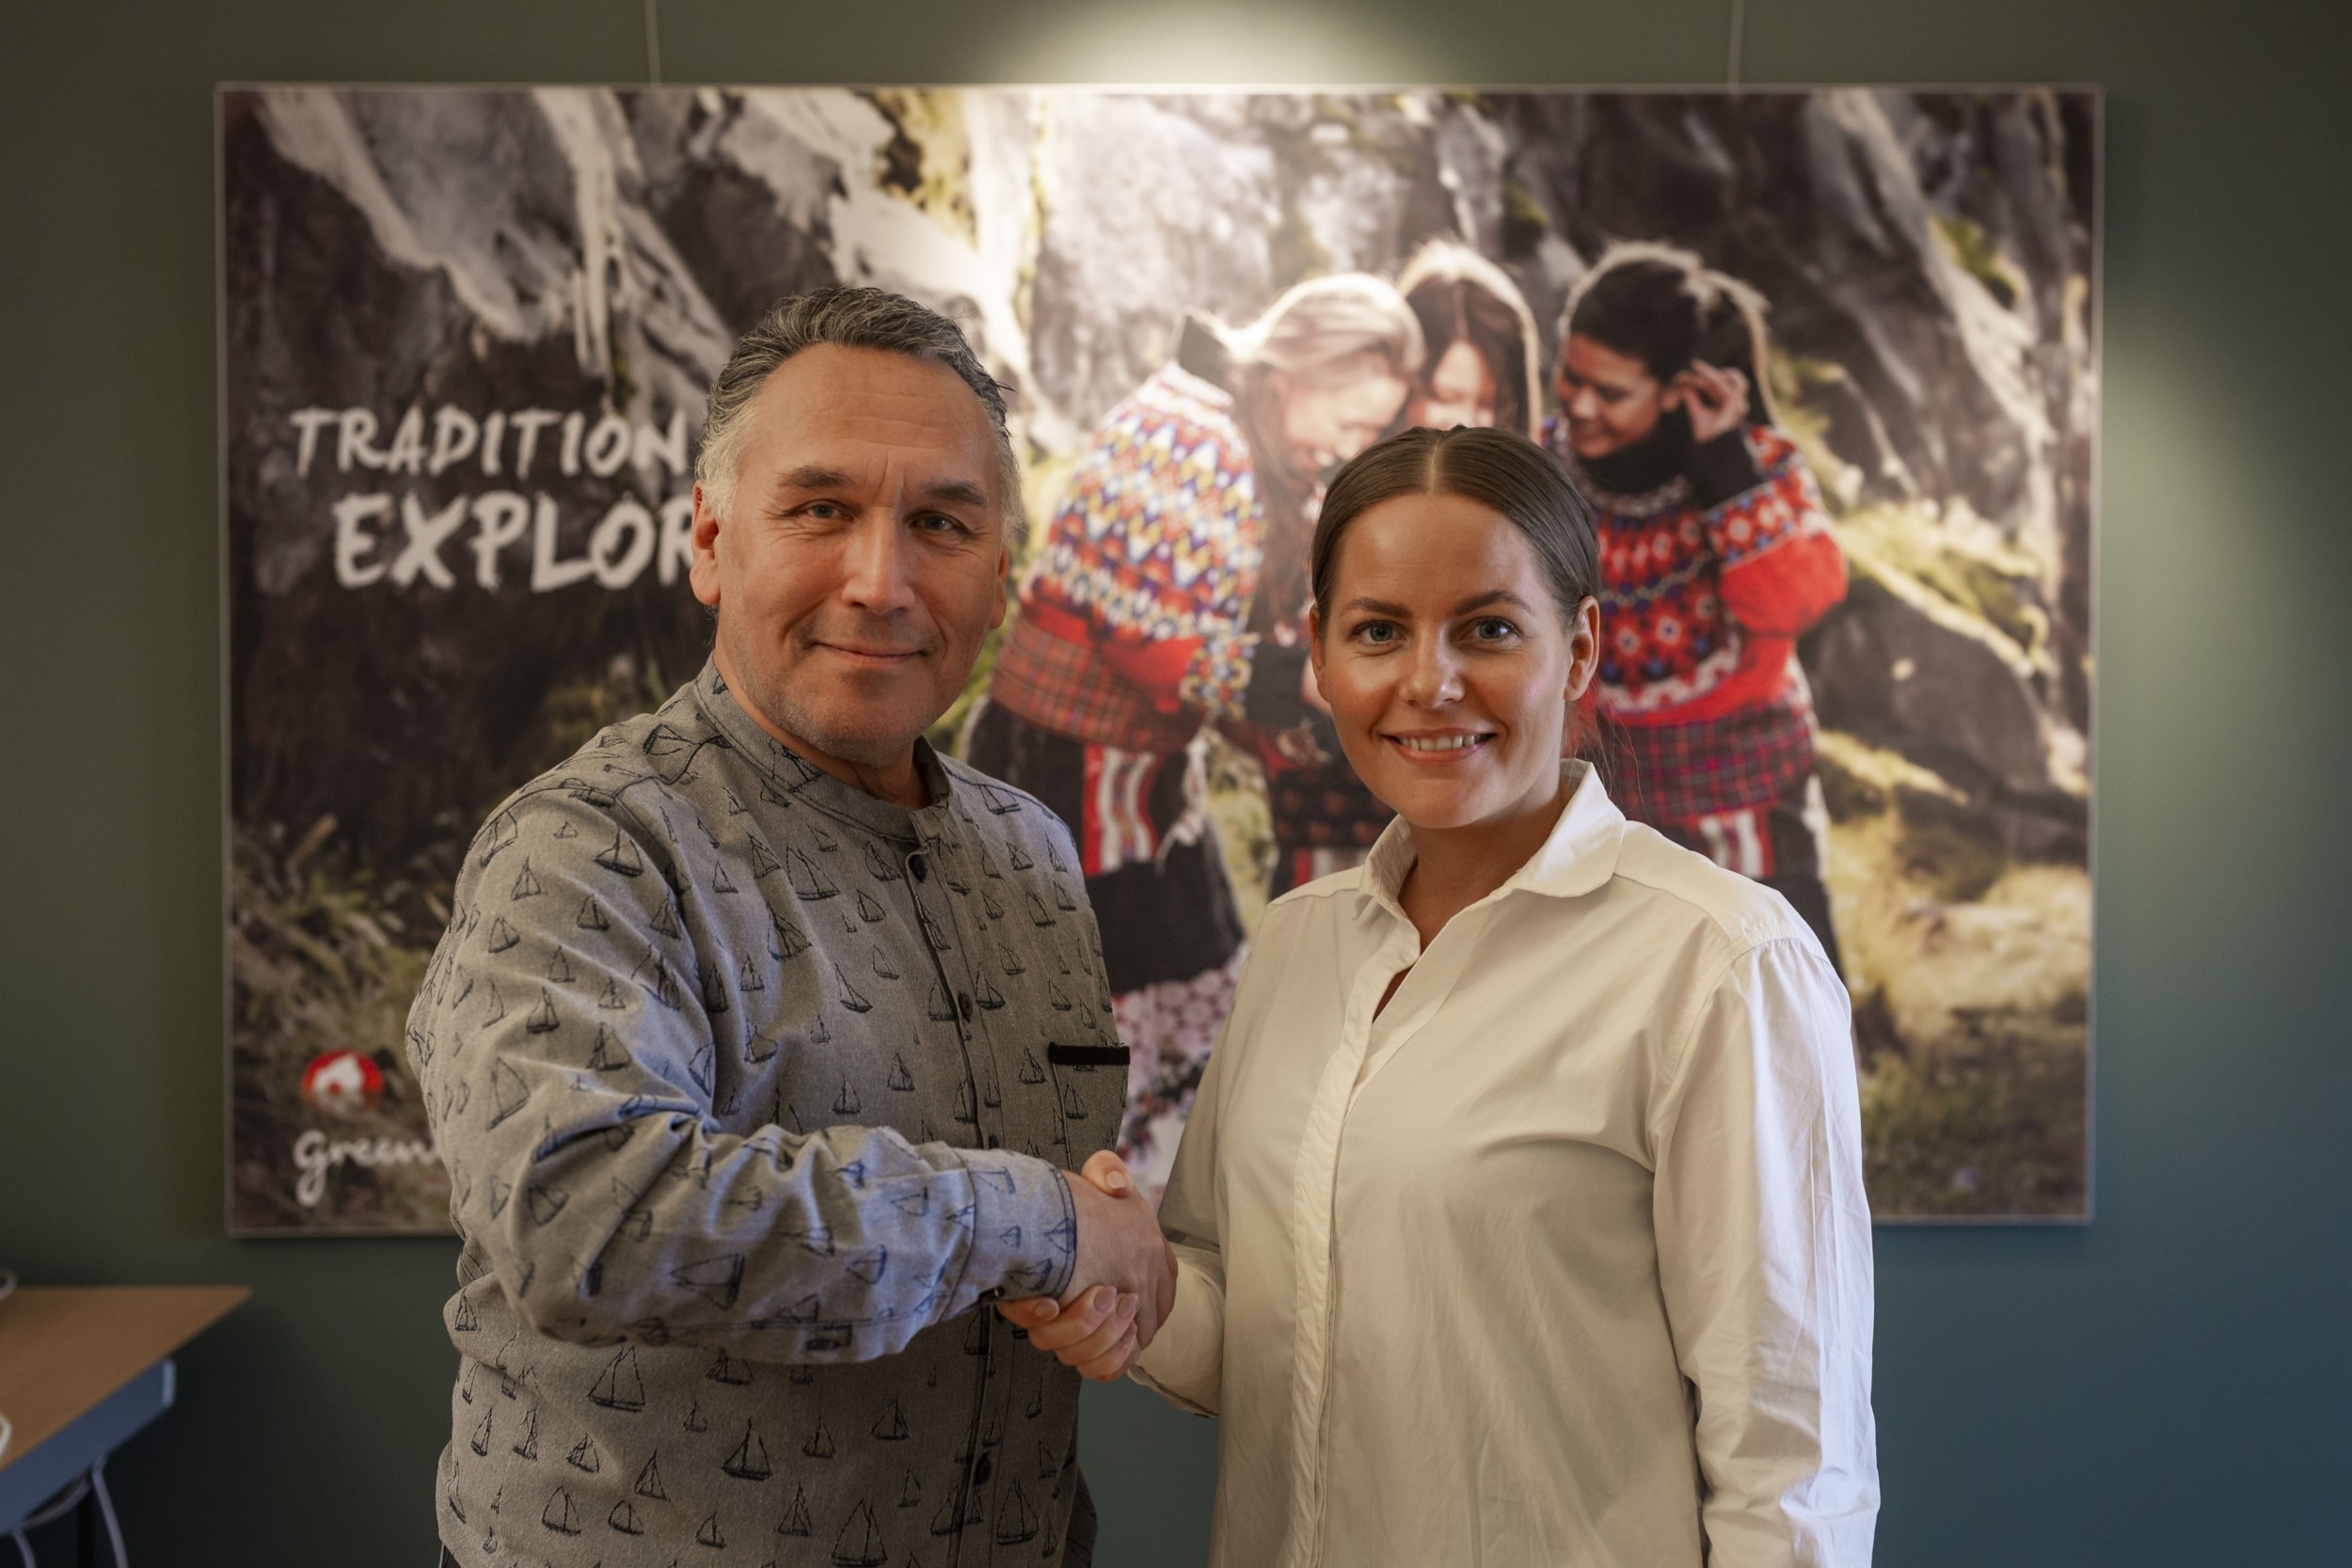 Visit Greenlands CEO, Anne Nivíka Grødem og Innovation Greenlands direktør, Allan Chemnitz kort efter underskrivelsen af aftale